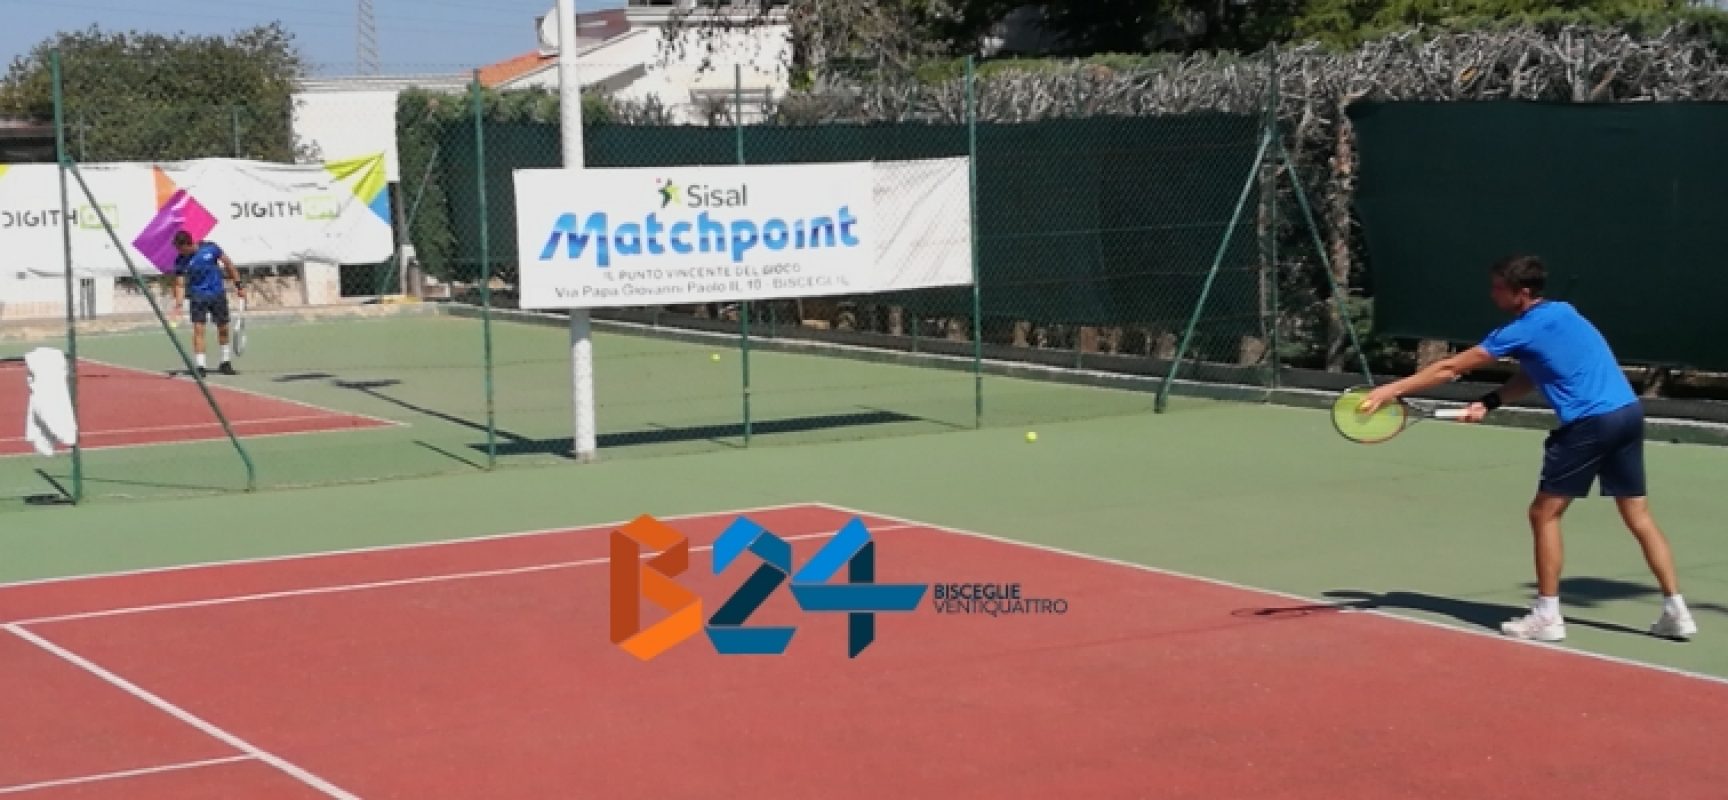 Tennis, Serie B: primo stop esterno in campionato per lo Sporting Club Bisceglie